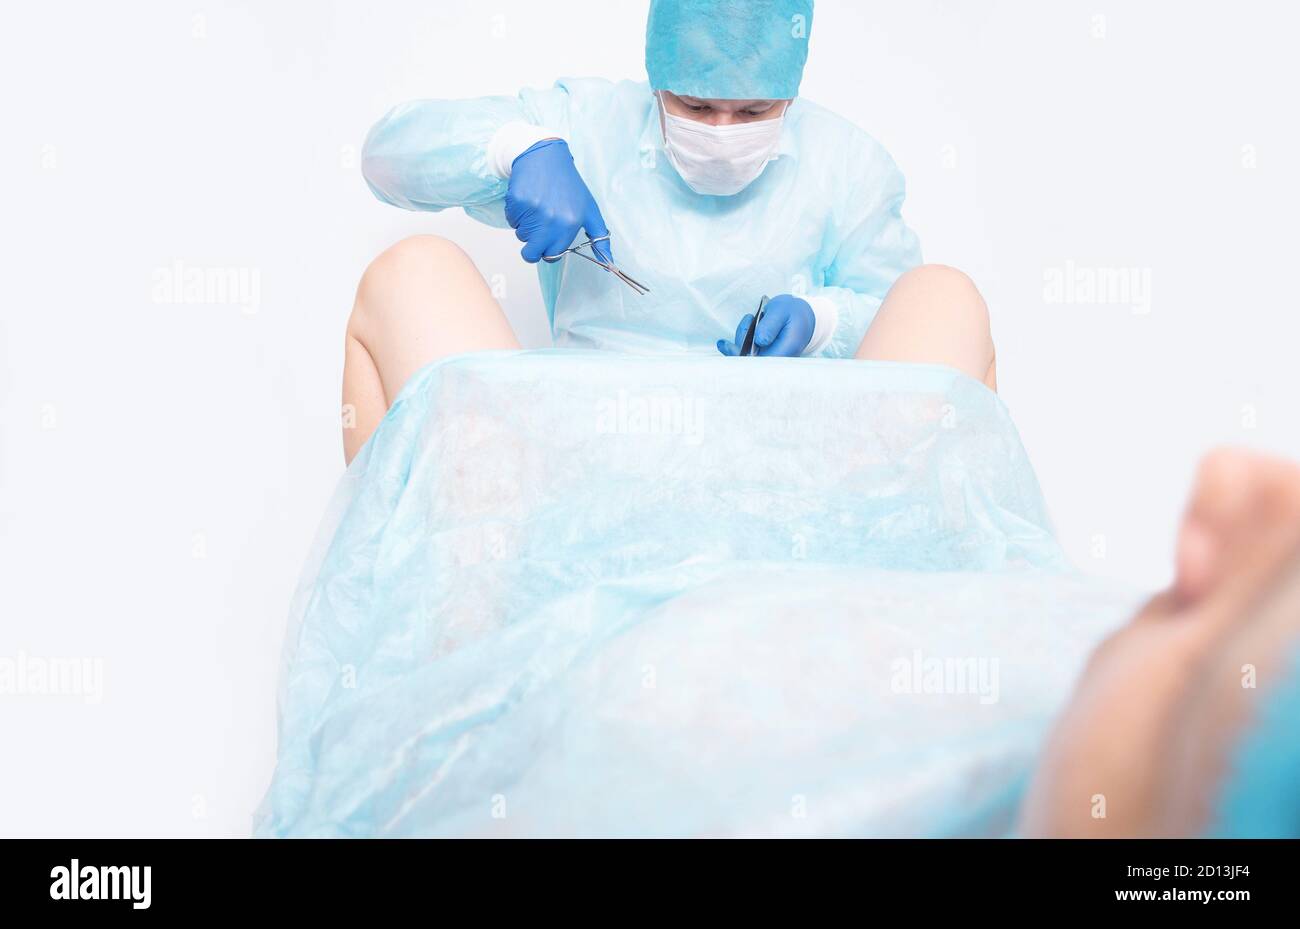 Eine Frau bei einem Gynäkologen Termin installiert eine Verhütungsspule auf der Gebärmutter als eine Methode der Verhütung gegen unerwünschte Schwangerschaft. Preventif Stockfoto